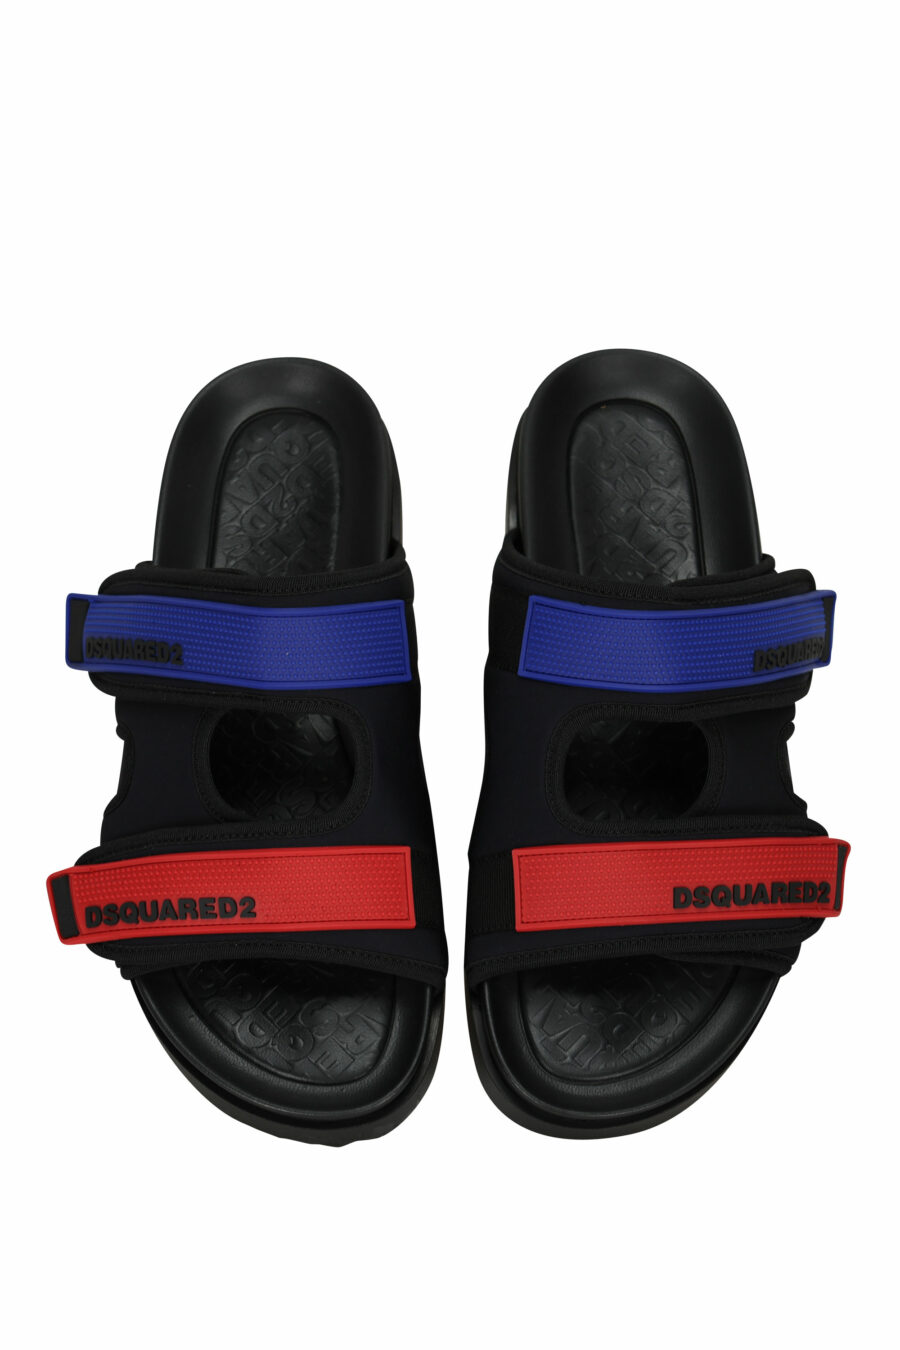 Schwarze Sandalen mit rotem und blauem Klettverschluss - 805777314715 4